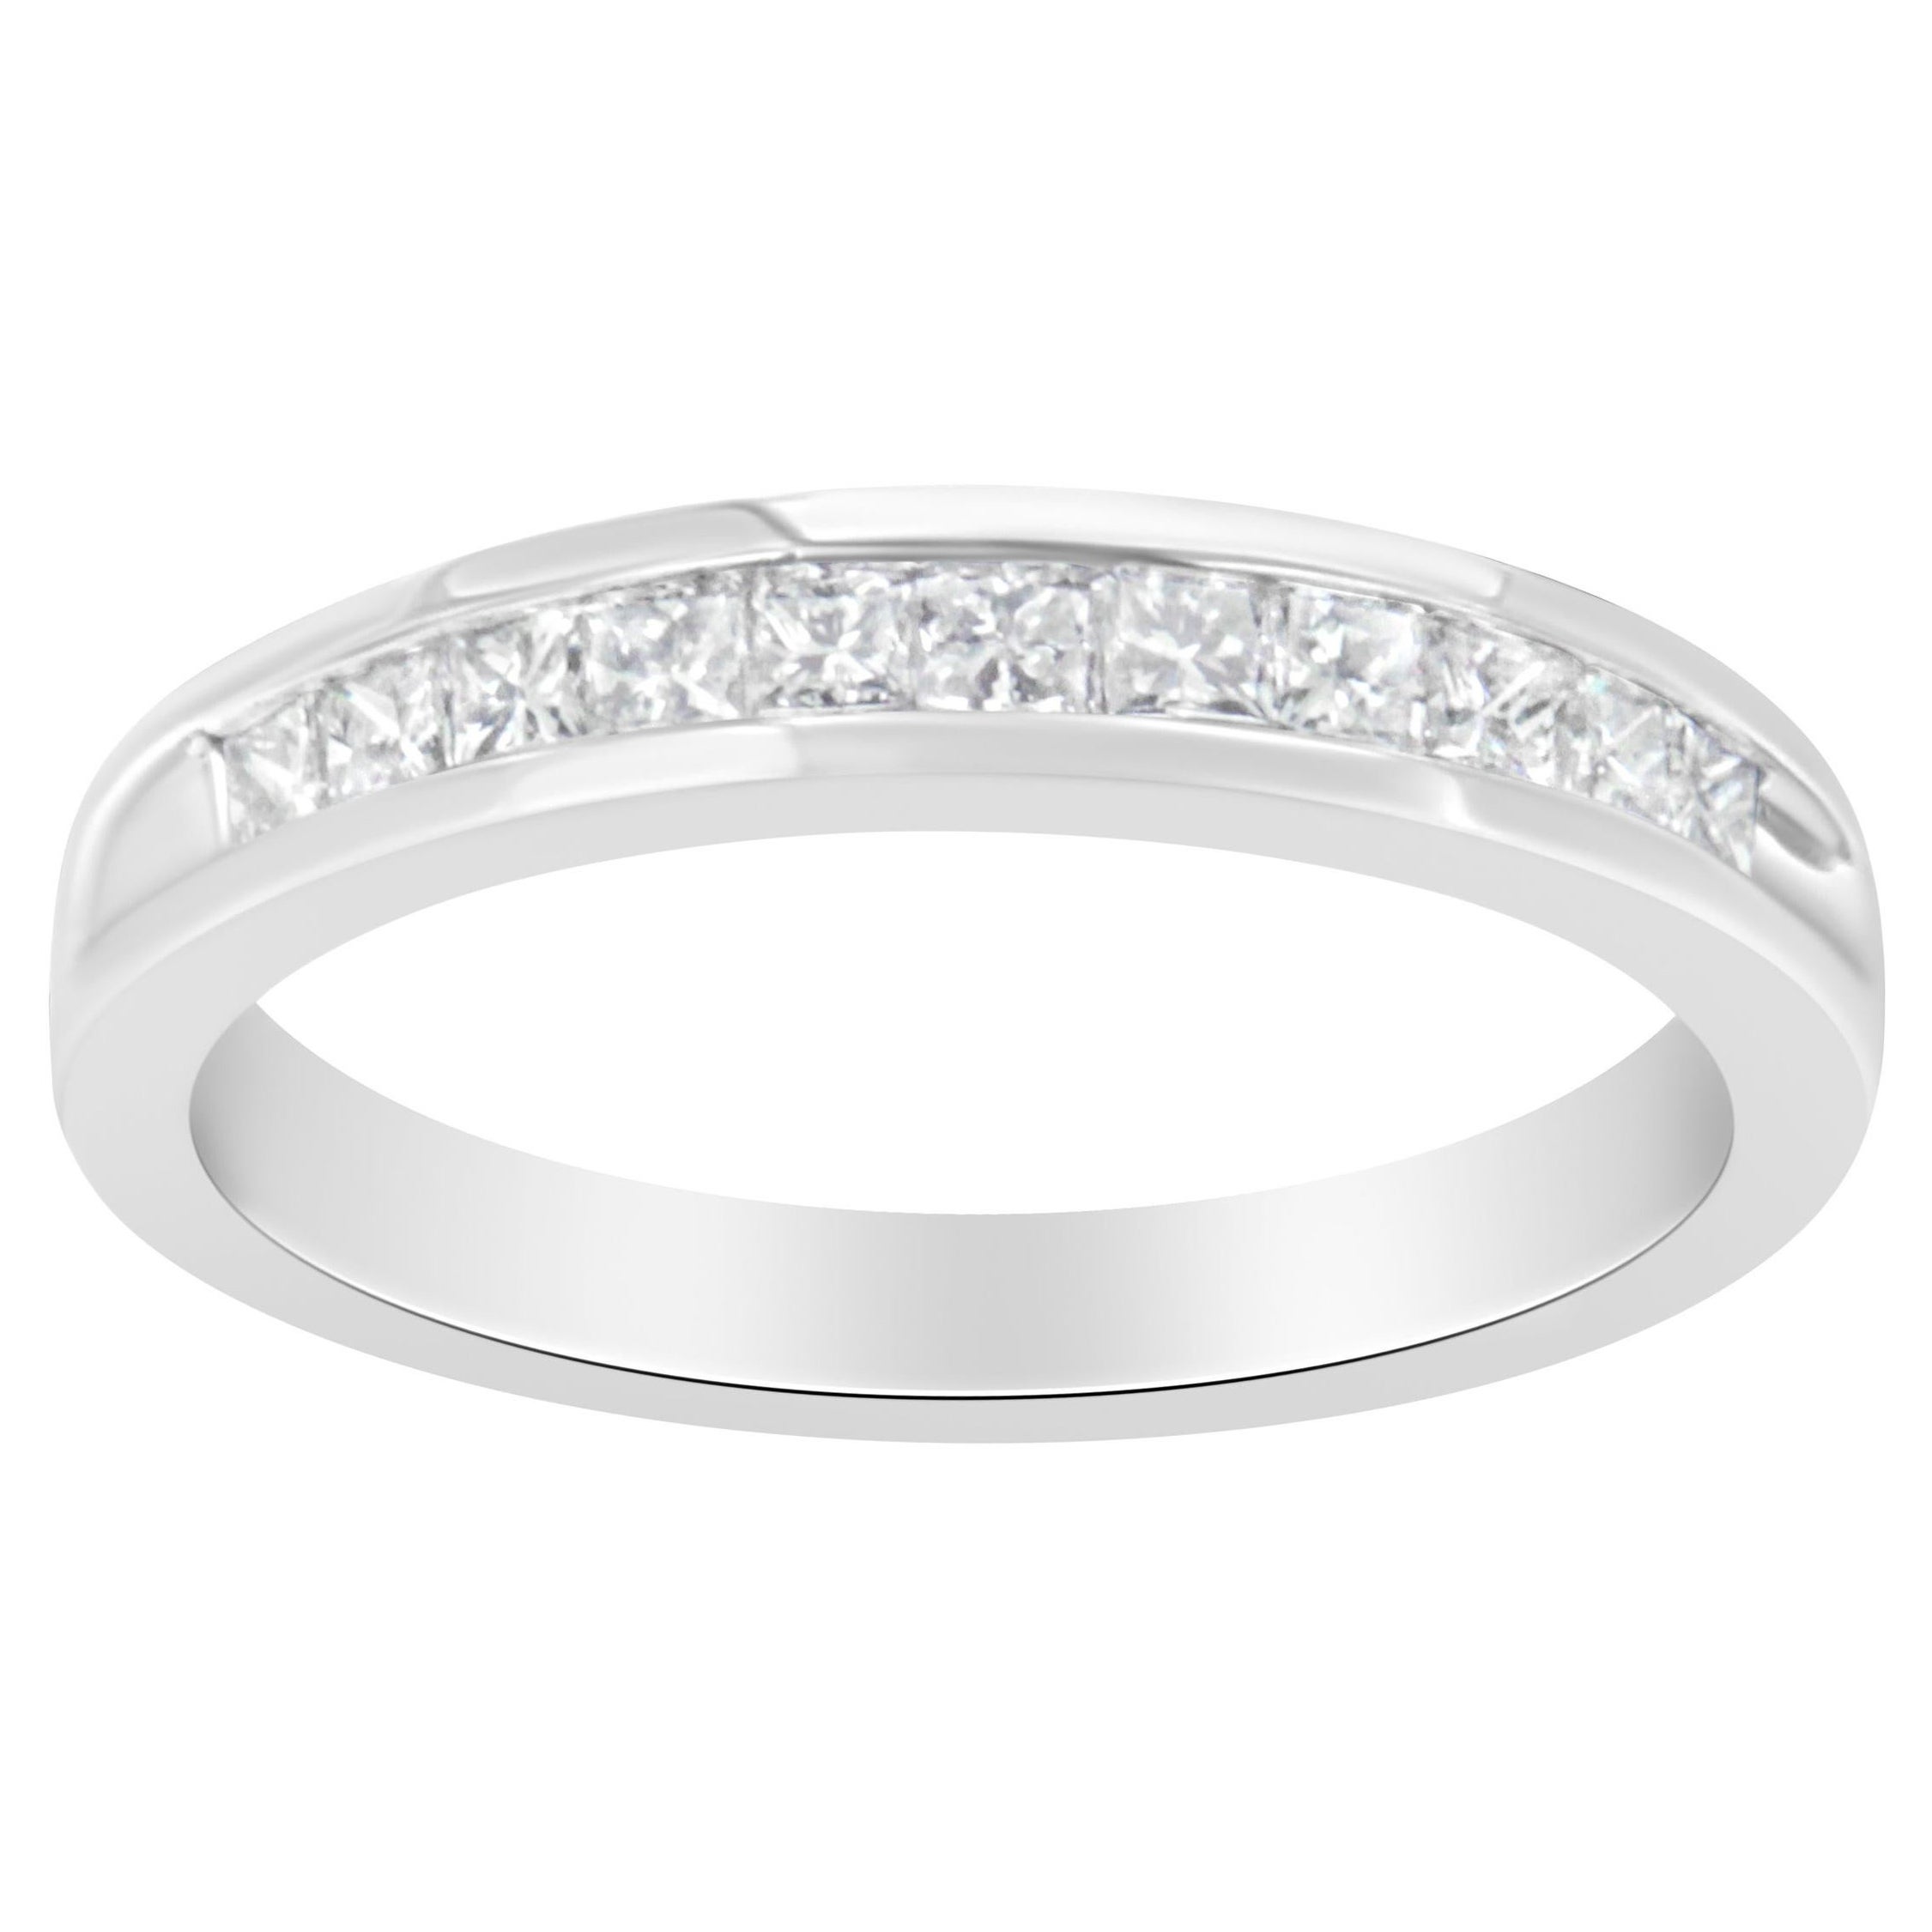 IGI Certified 18K White Gold 1/2 Carat Diamond Wedding Band Ring For Sale